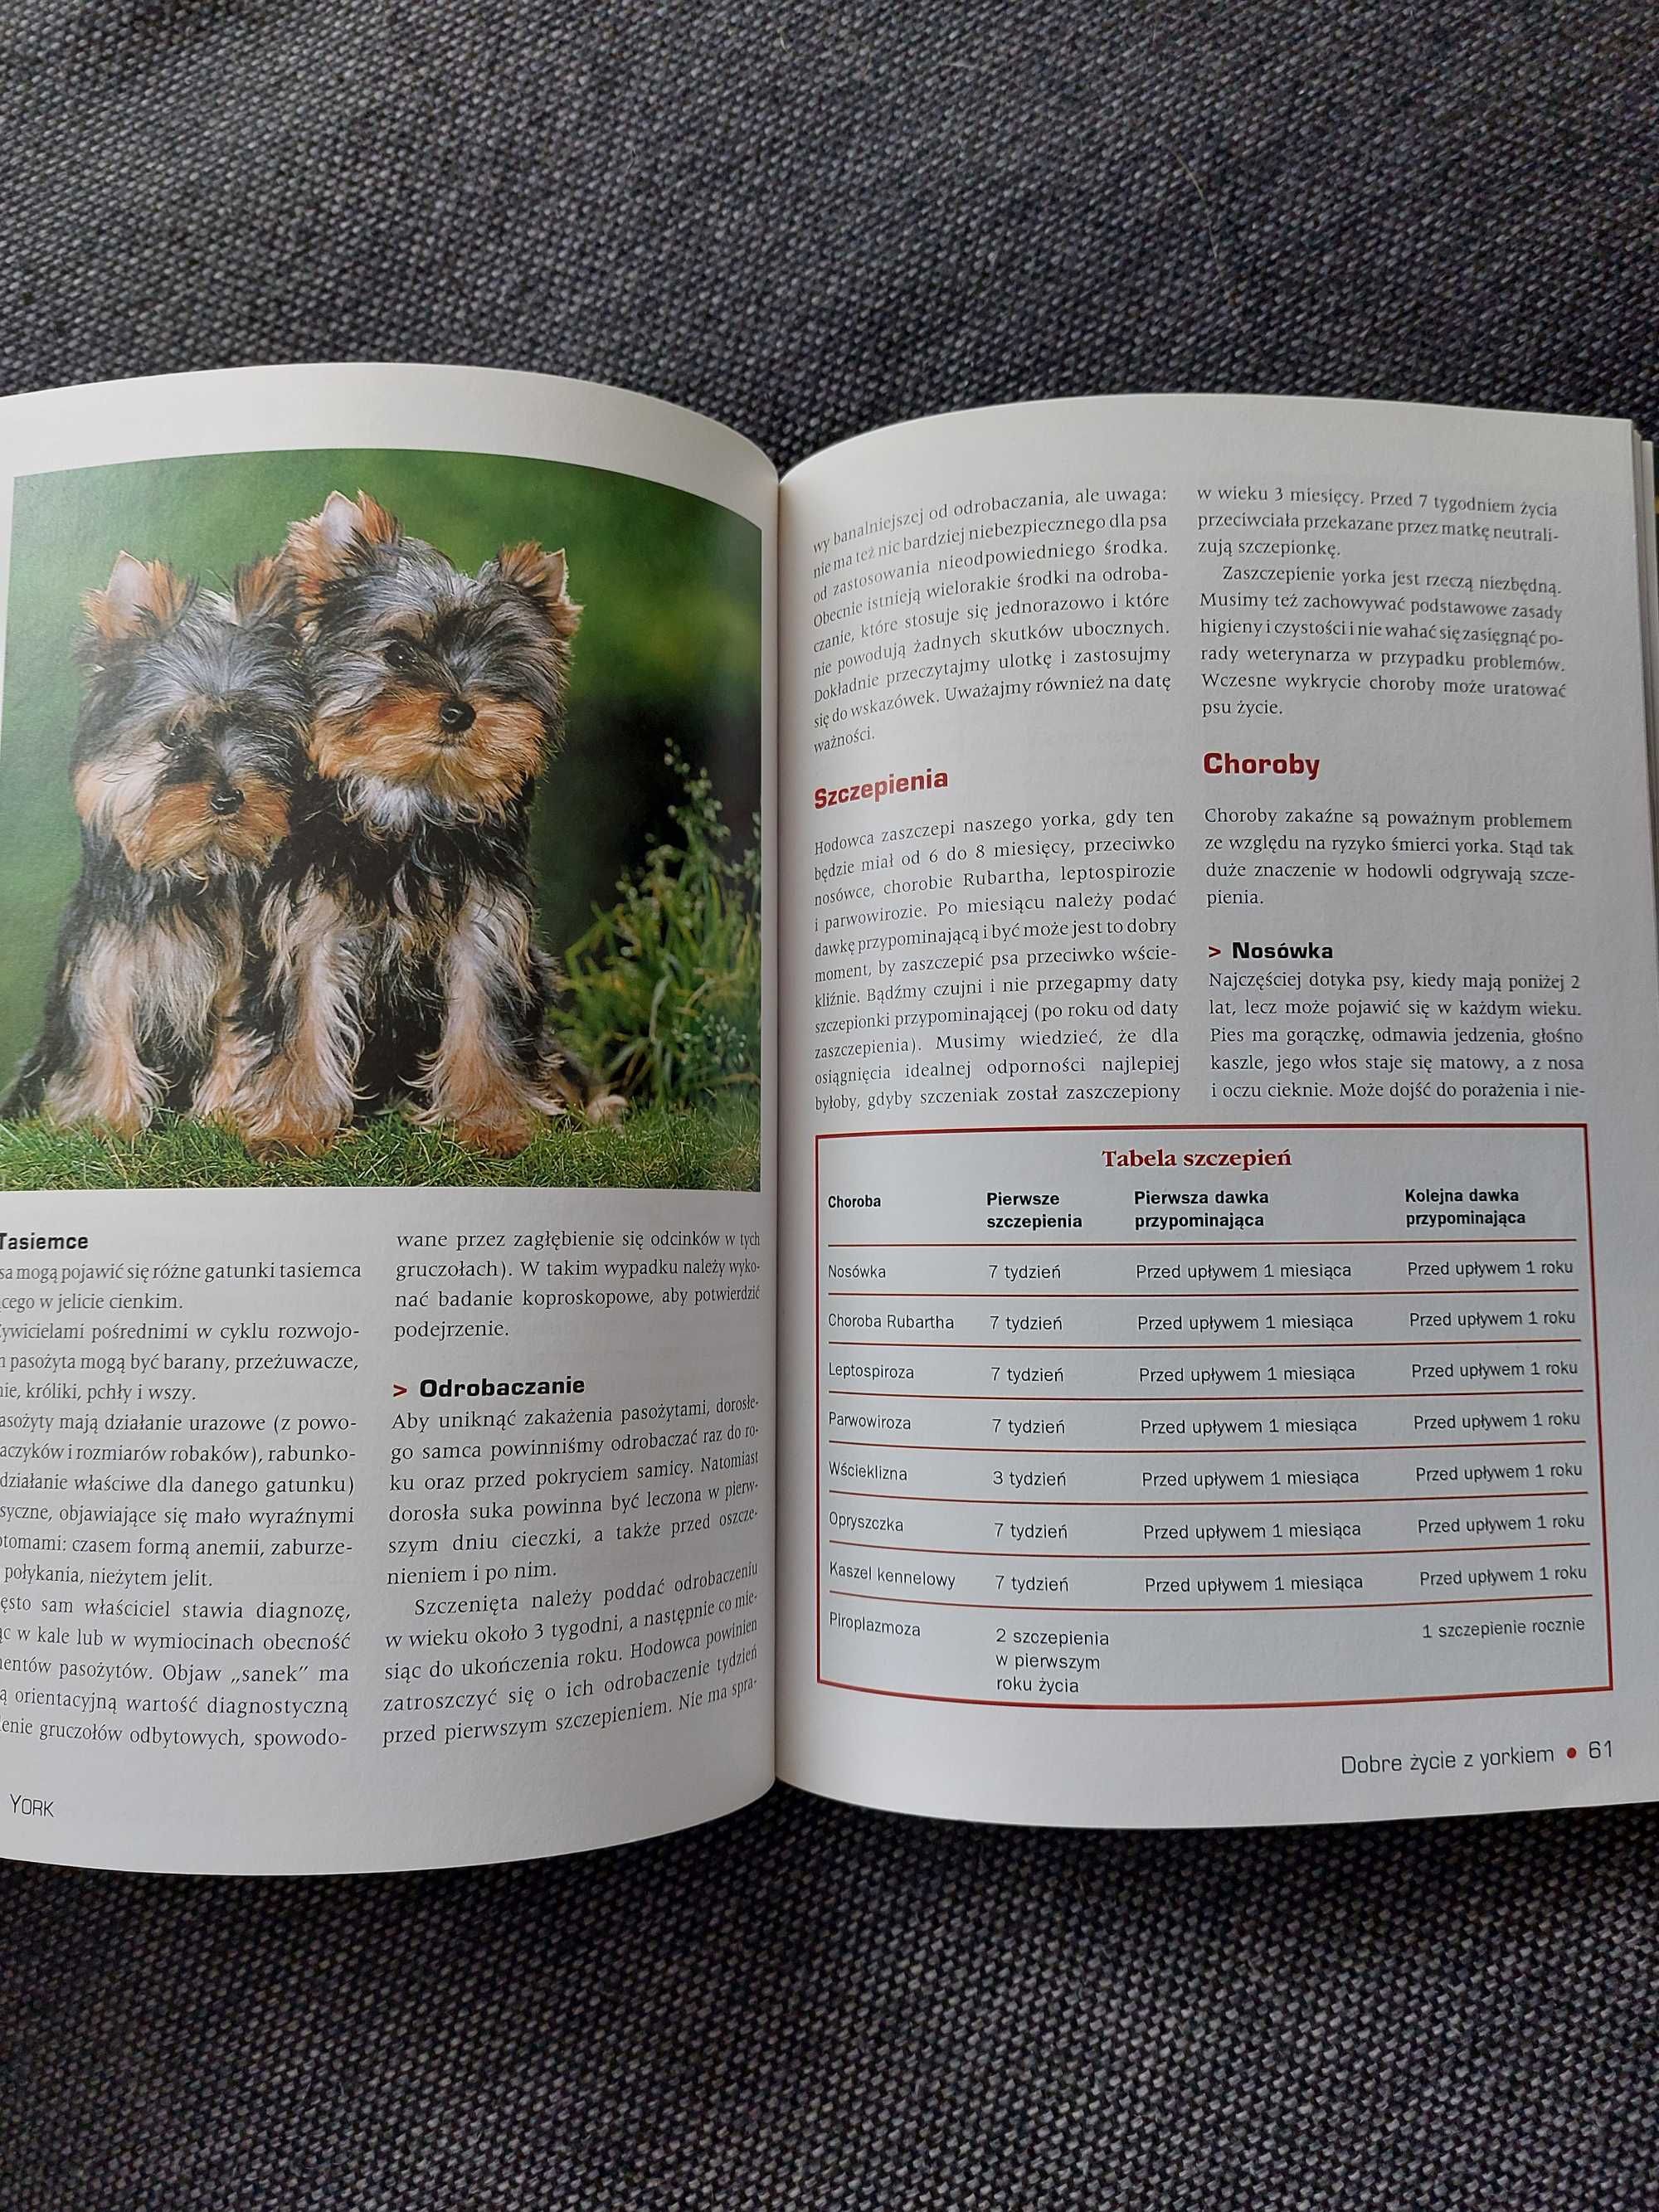 Książka Yorkshire Terrier Opieka i Hodowla